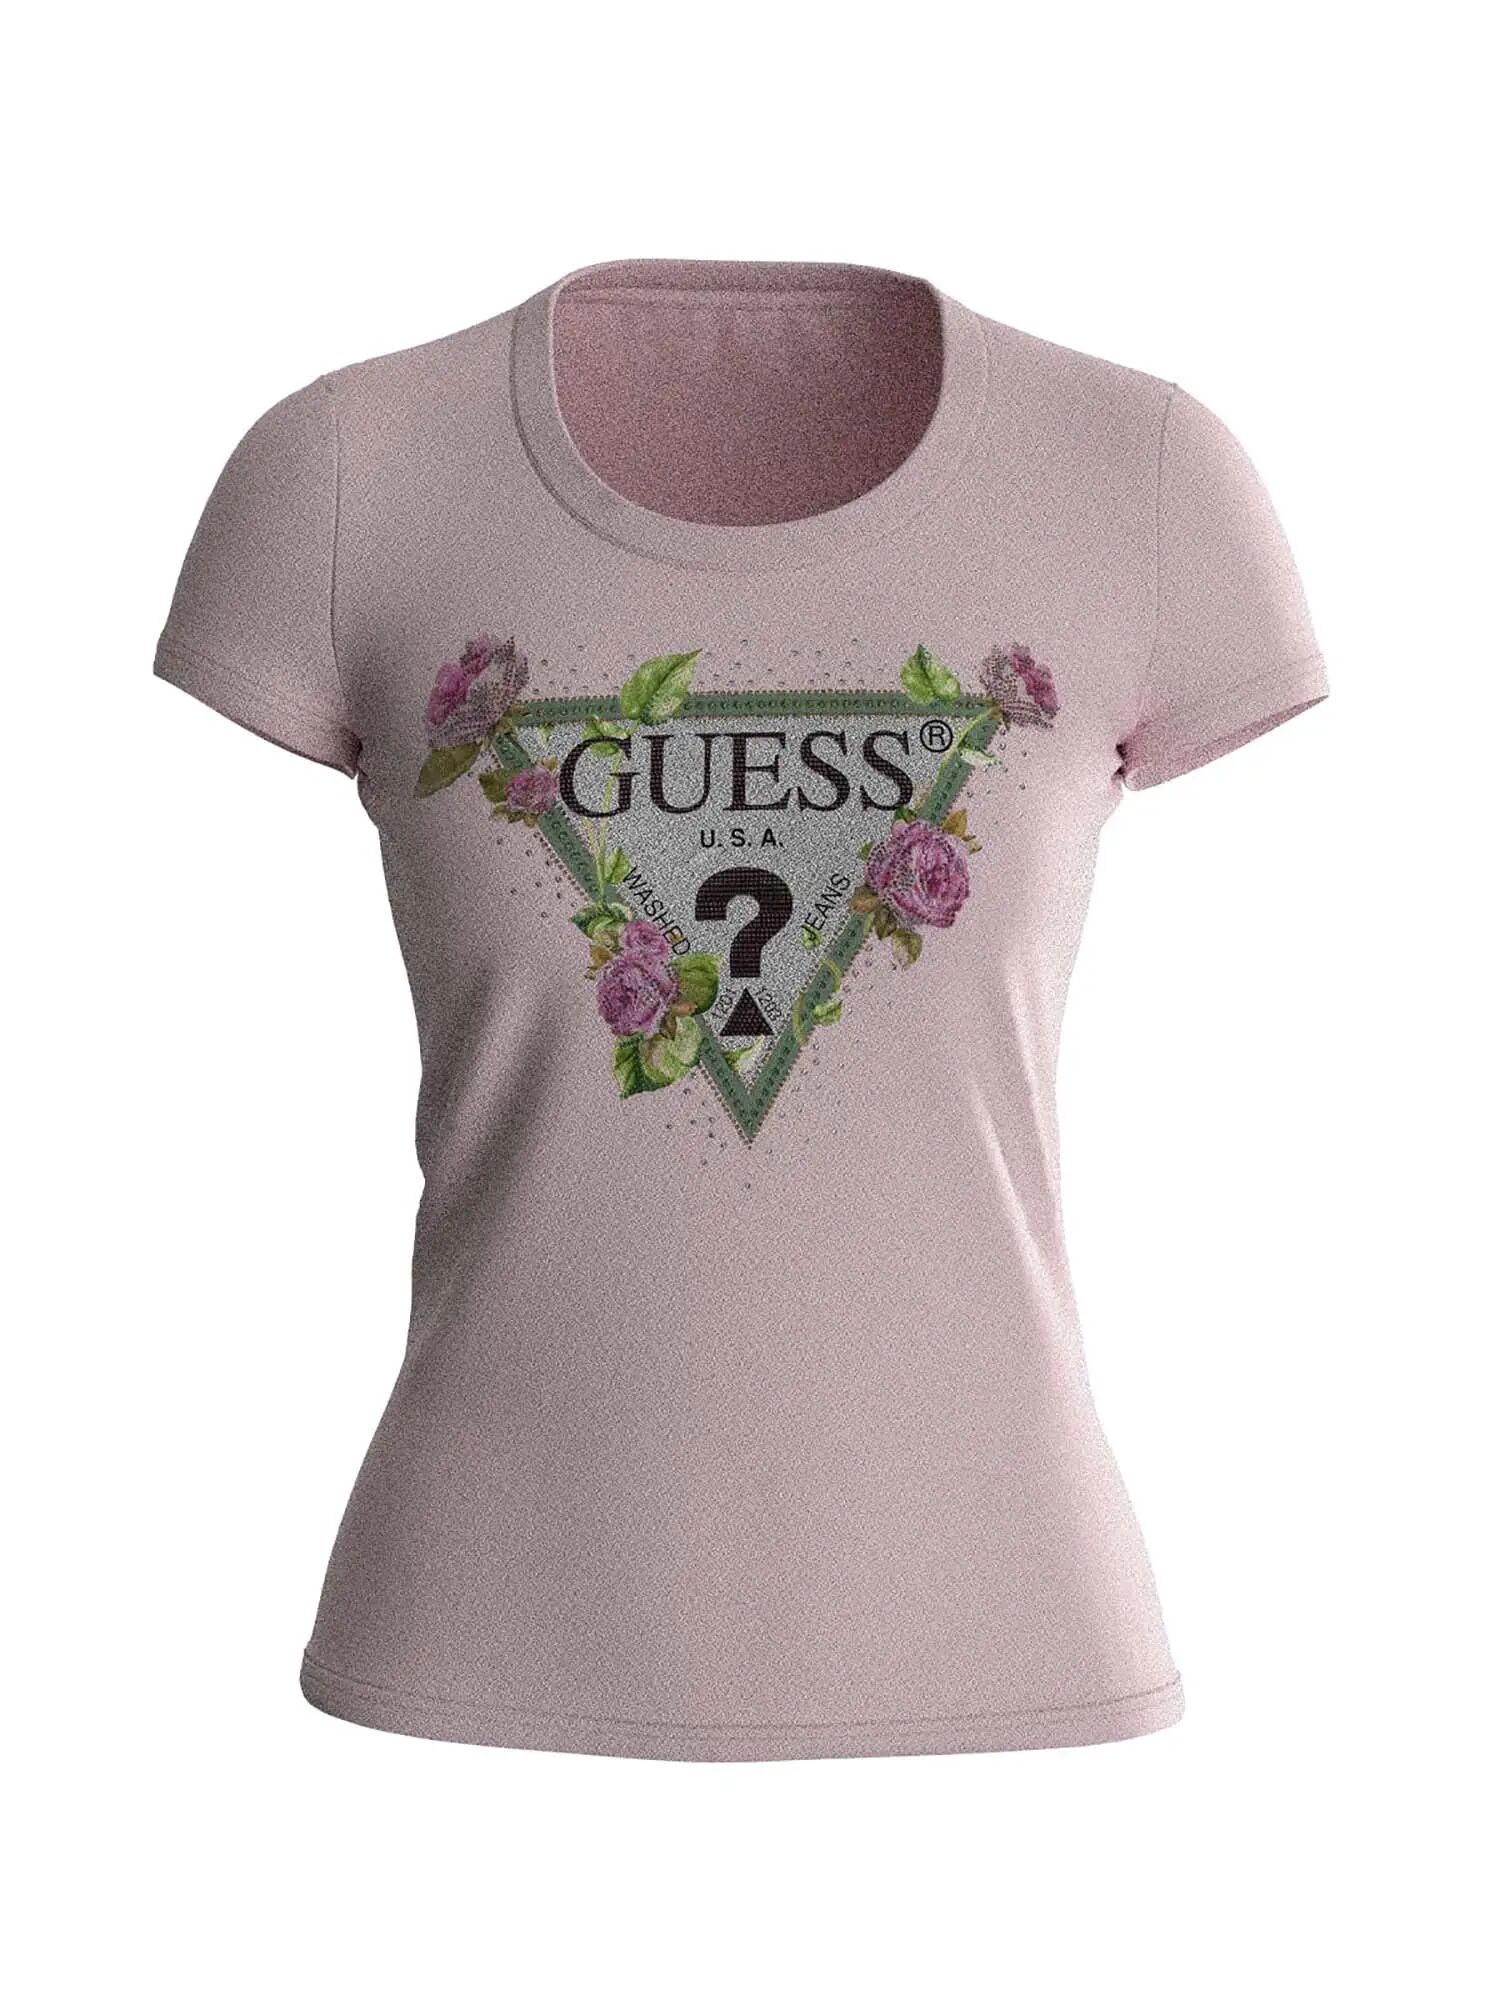 Guess T-shirt Donna Colore Rosa ROSA L